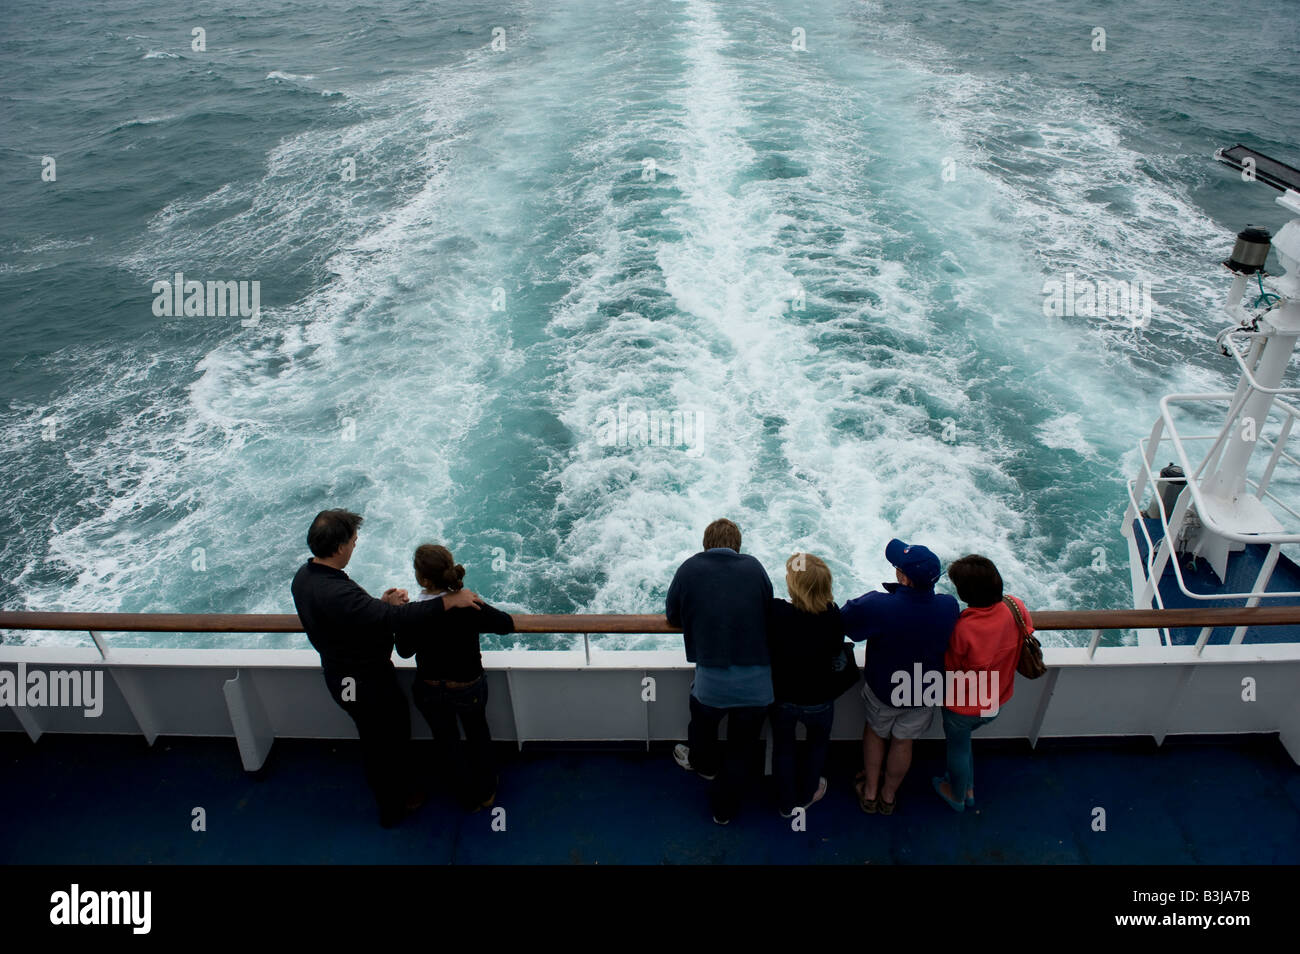 Un cross channel ferry génère une multiplication des mer comme il va de l'autre côté de la Manche Banque D'Images